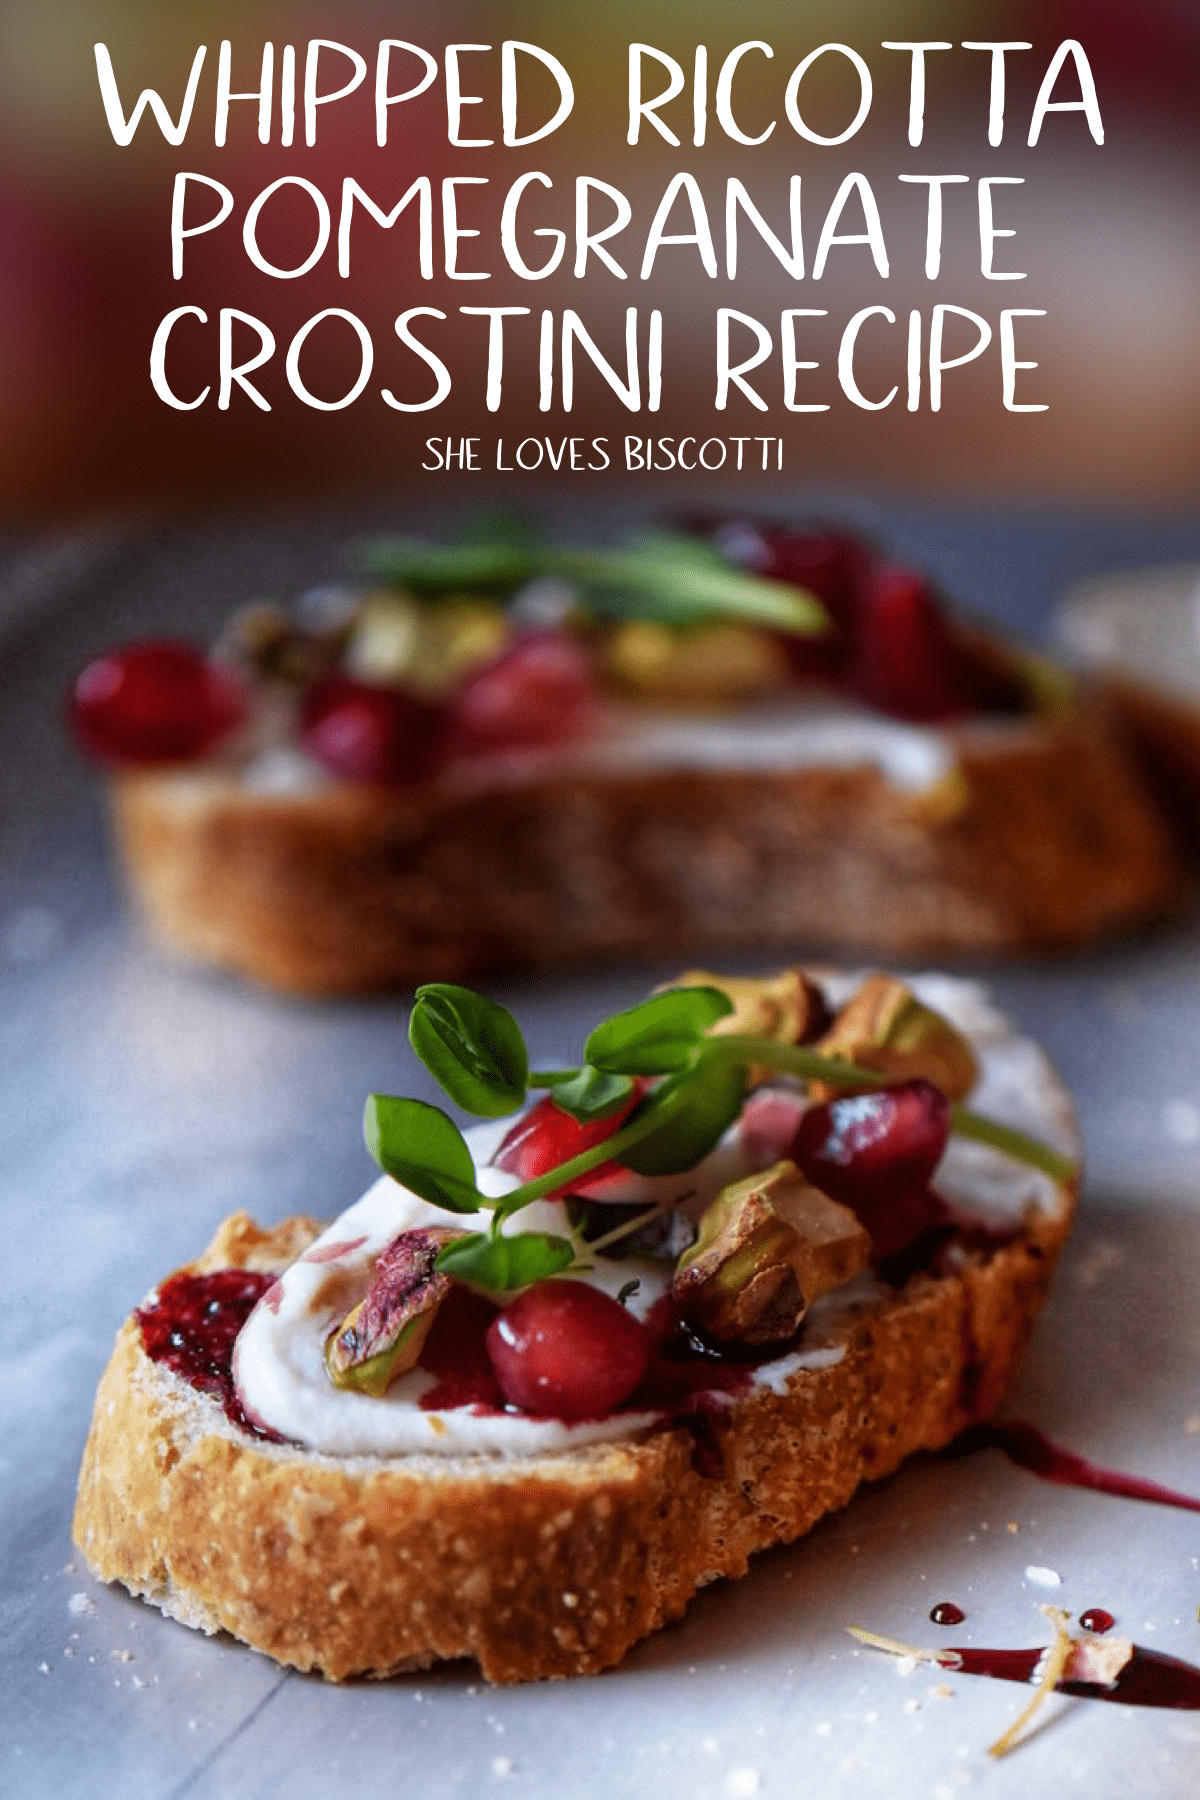 Italian Crostini Recipes
 Ricotta Crostini Recipe With Pomegranate She Loves Biscotti